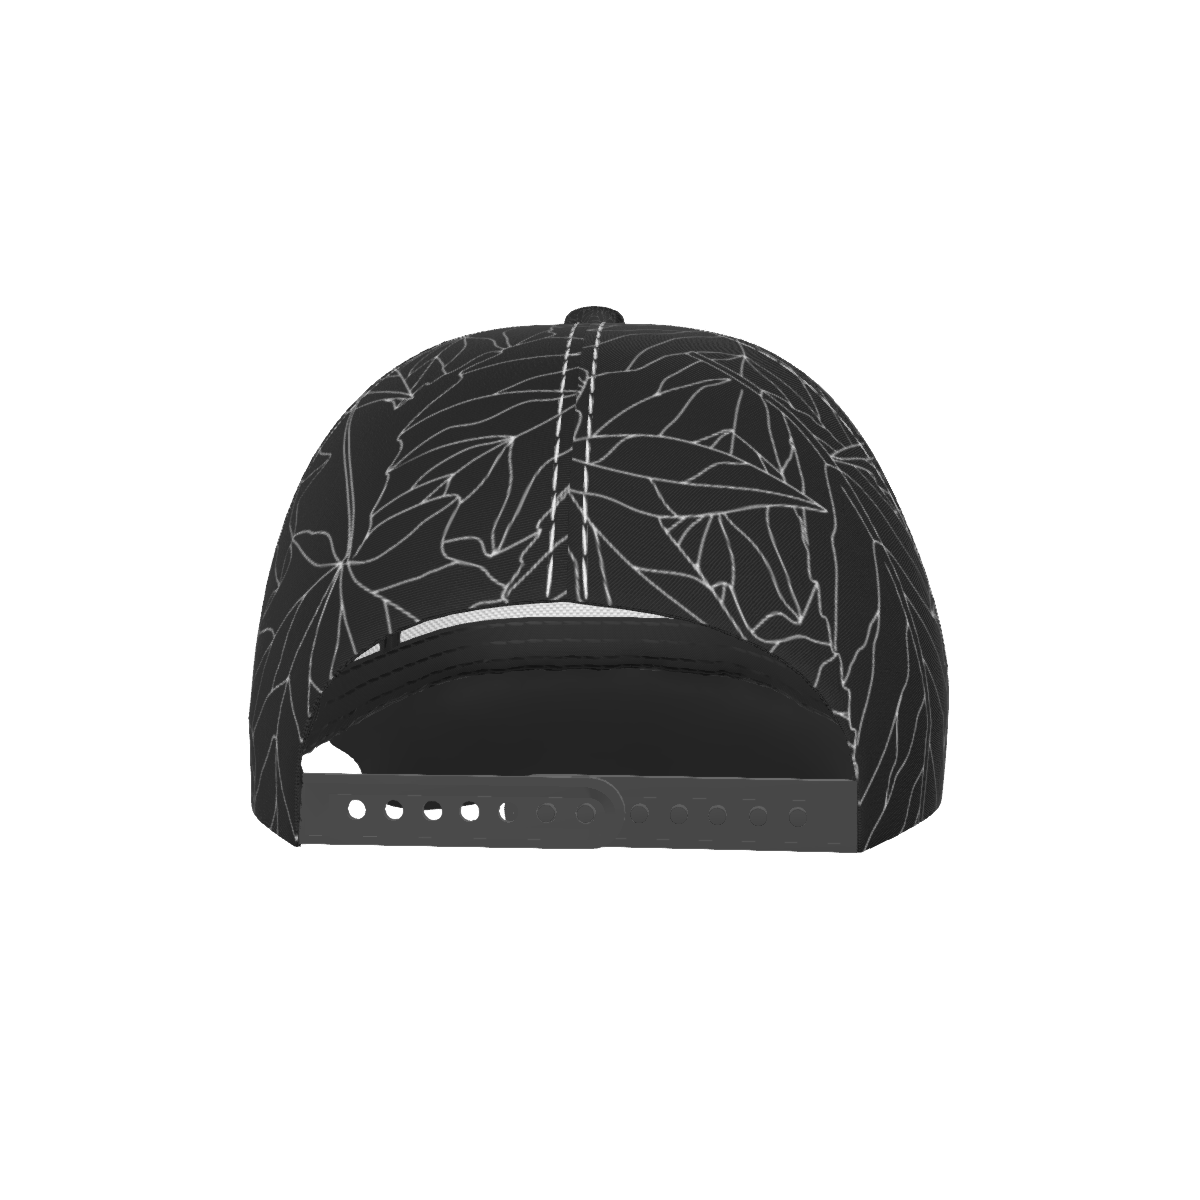 Black Autumn Peaked Cap - DromedarShop.com Online Boutique